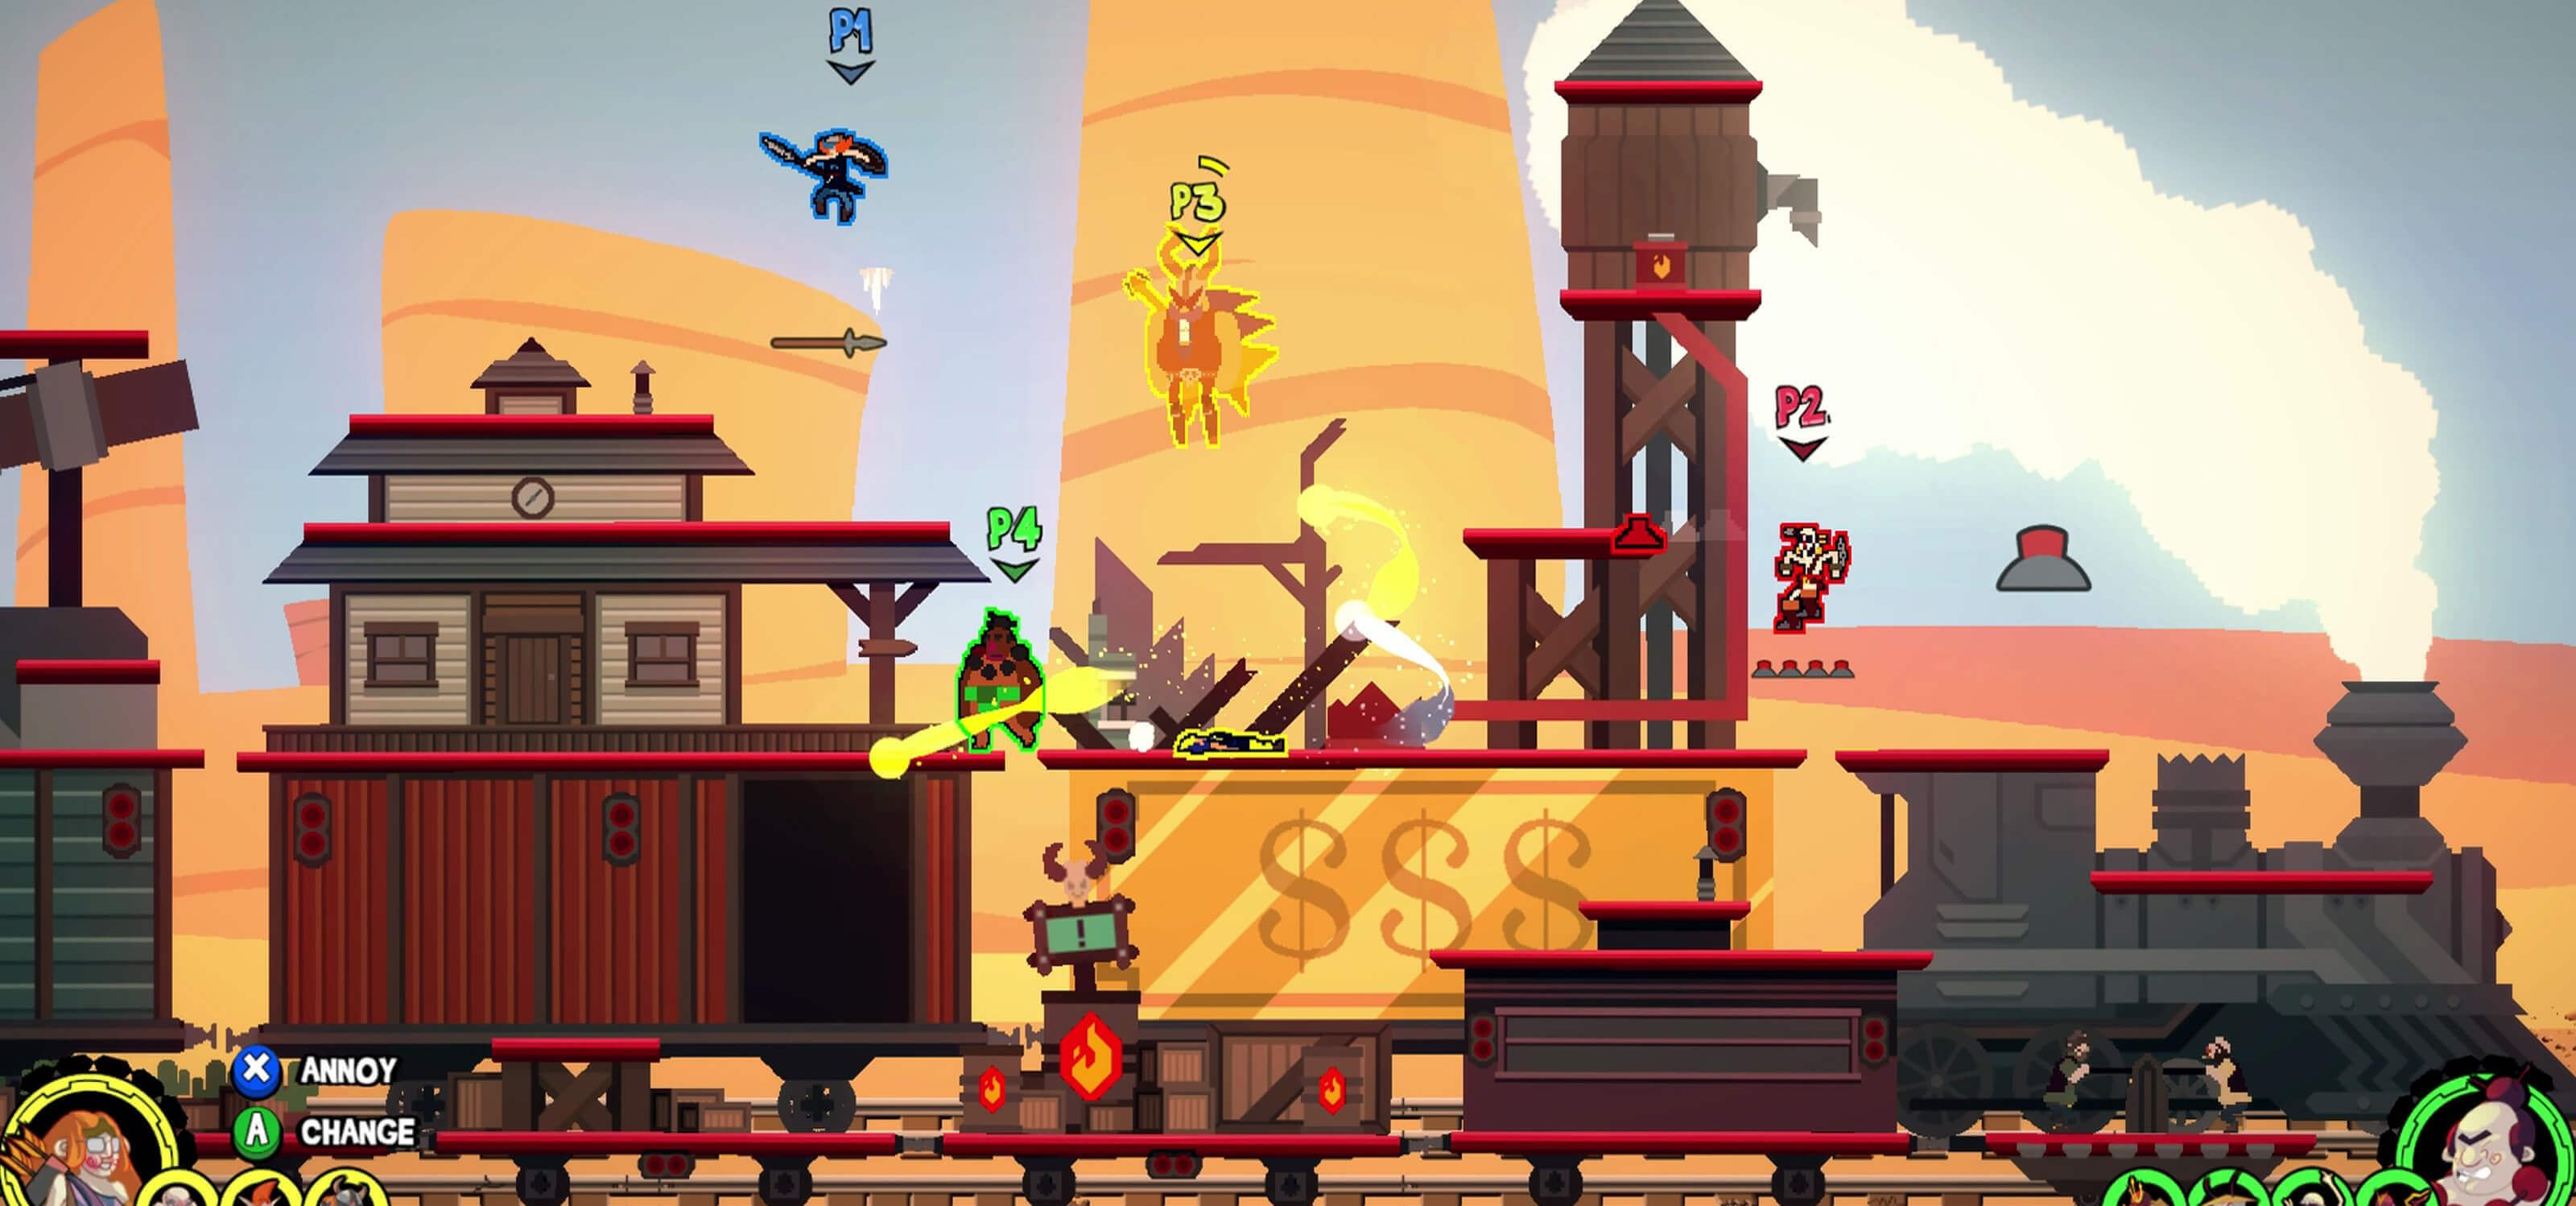 Captura de pantalla del juego Dynasty Feud de Kaia Studios, con un tren de vapor que pasa por una ciudad de estilo occidental.